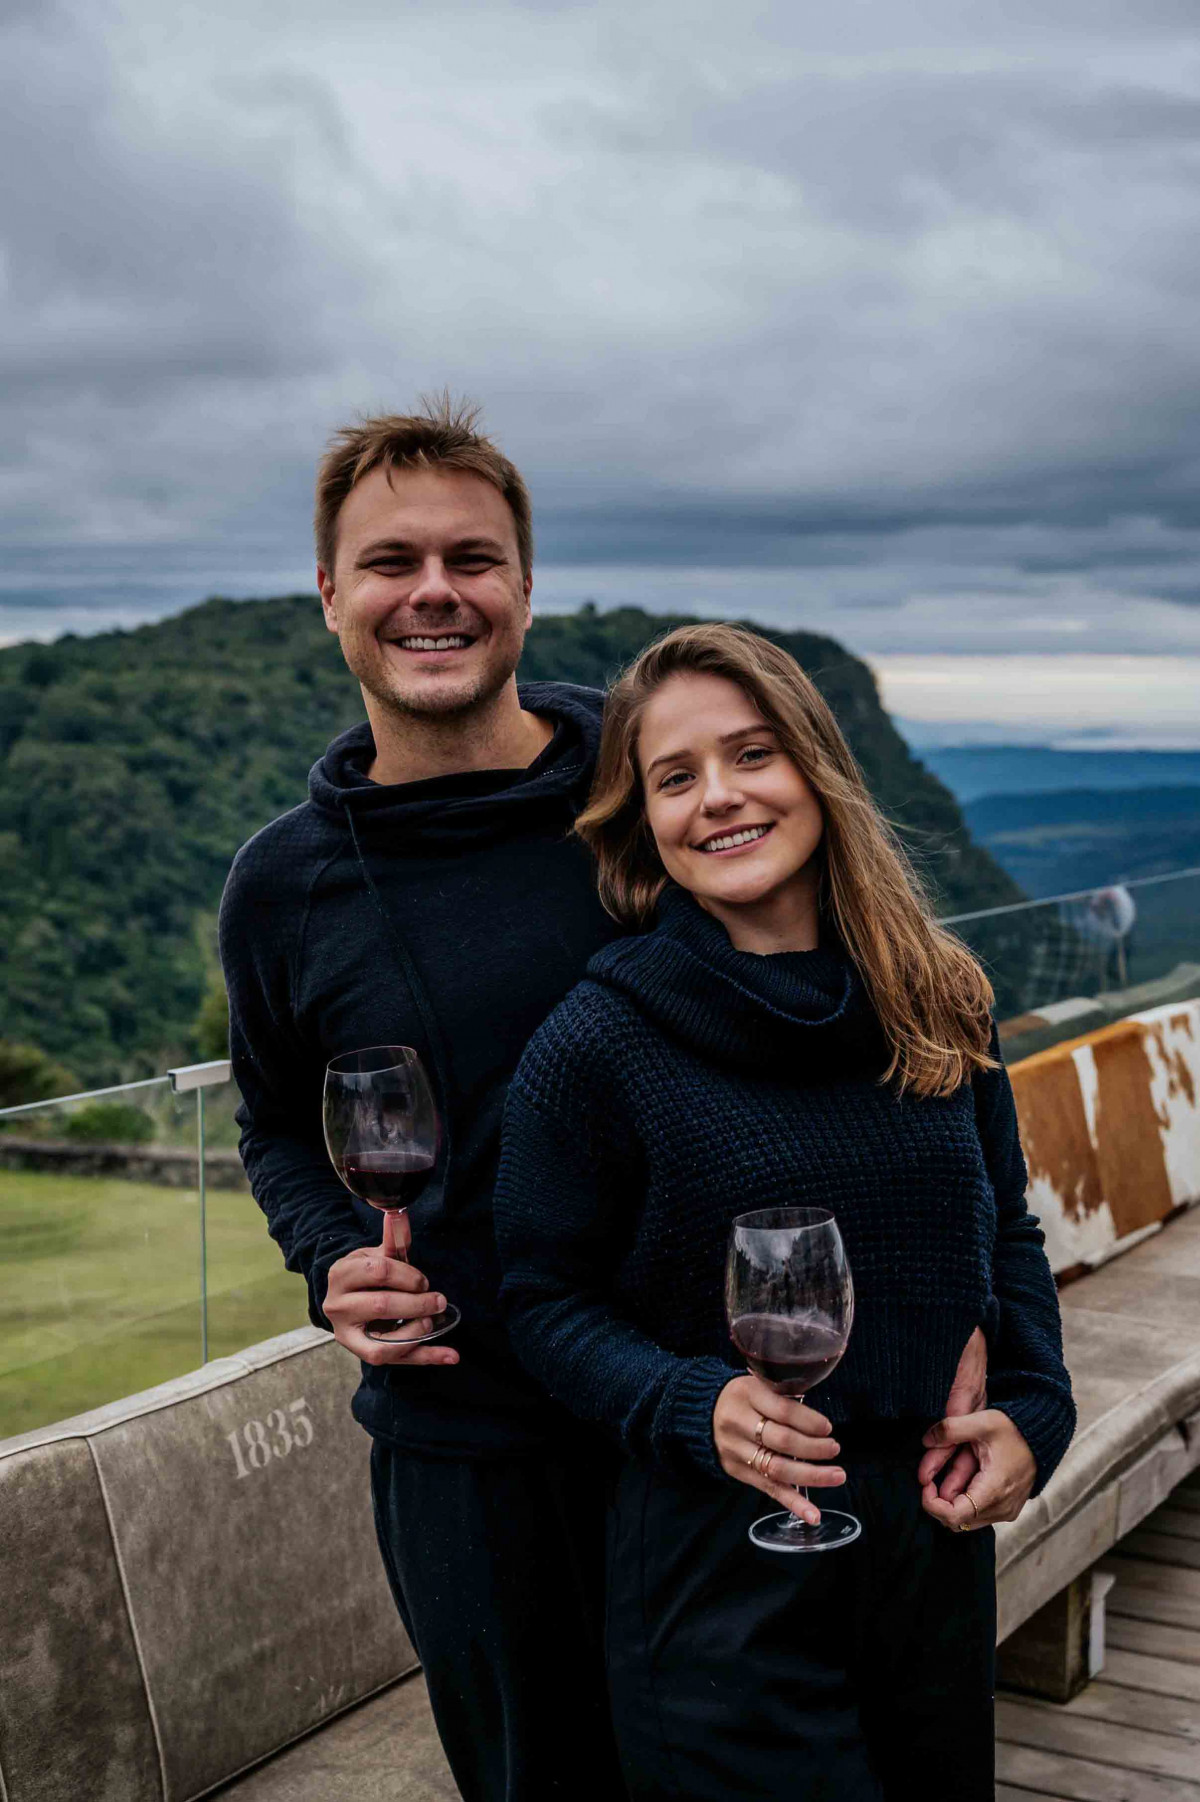 Raquel Guislene e Gustavo Gustavo Chiella  escolheram vinho tinto para curtir o visual do Vale do Quilombo